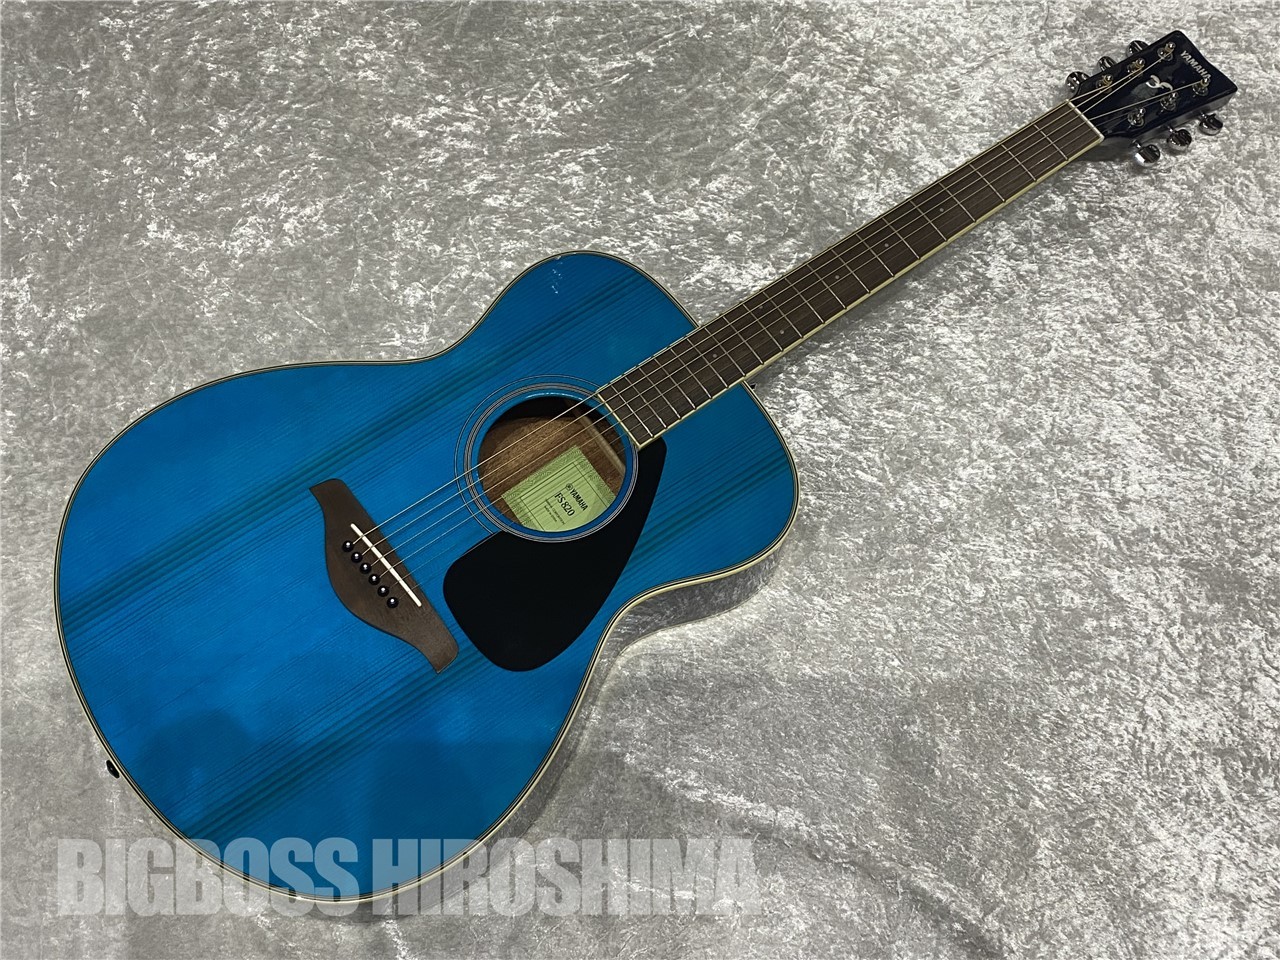 【即納可能】YAMAHA(ヤマハ) FS820 Turquoise(アコースティックギター) 広島店